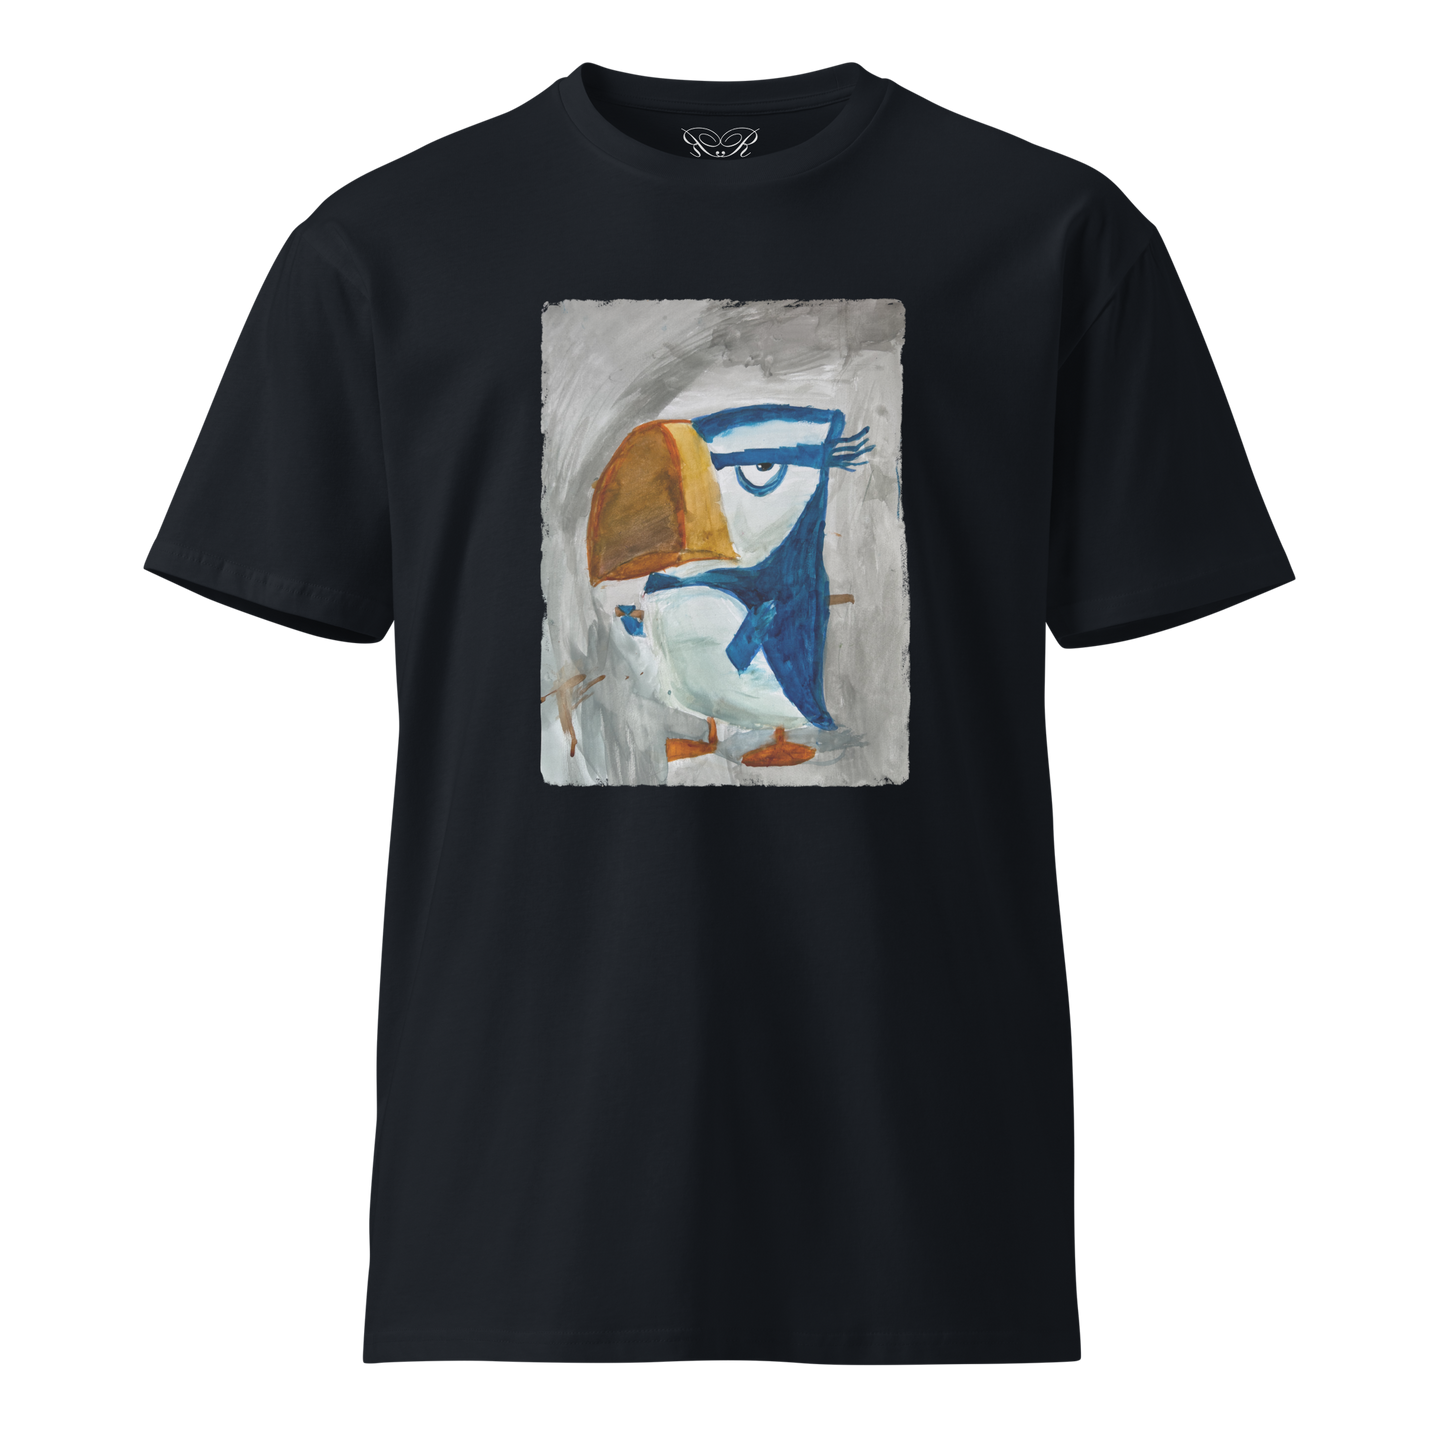 Unisex premium t-shirt "Bird"